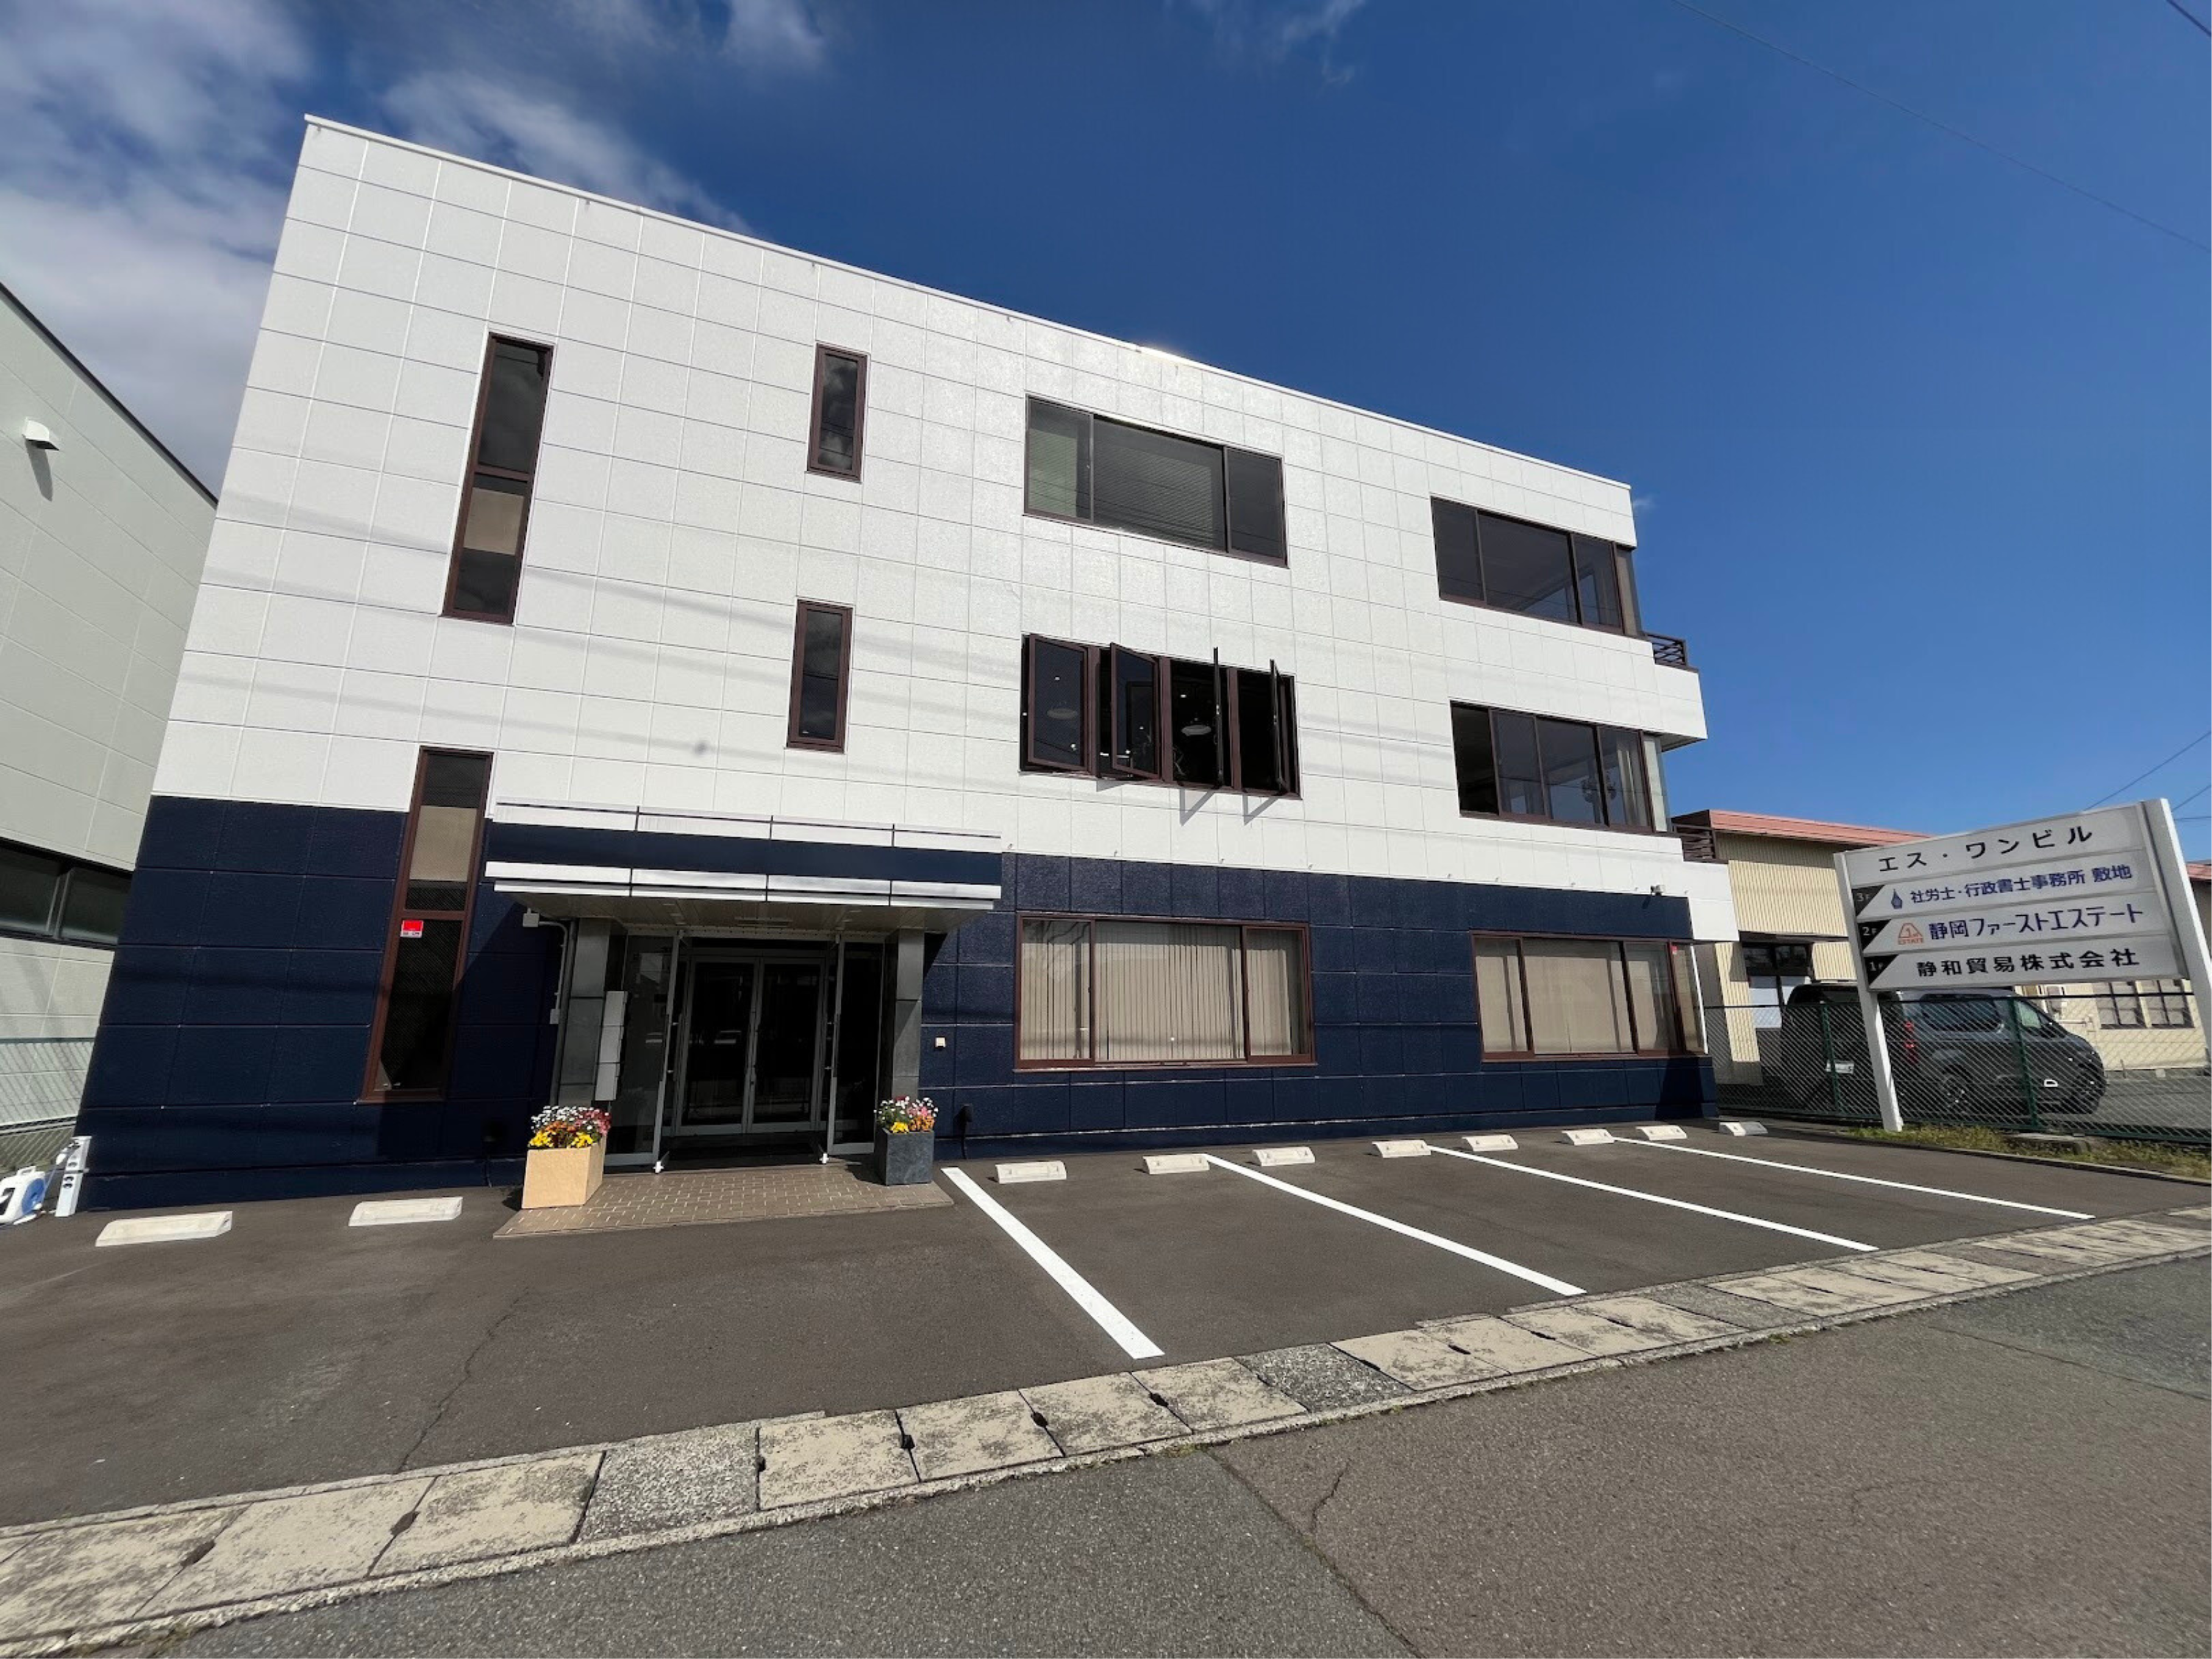 静岡の社労士・行政書士事務所敷地の事務所外観です。駐車場5台分完備しています。